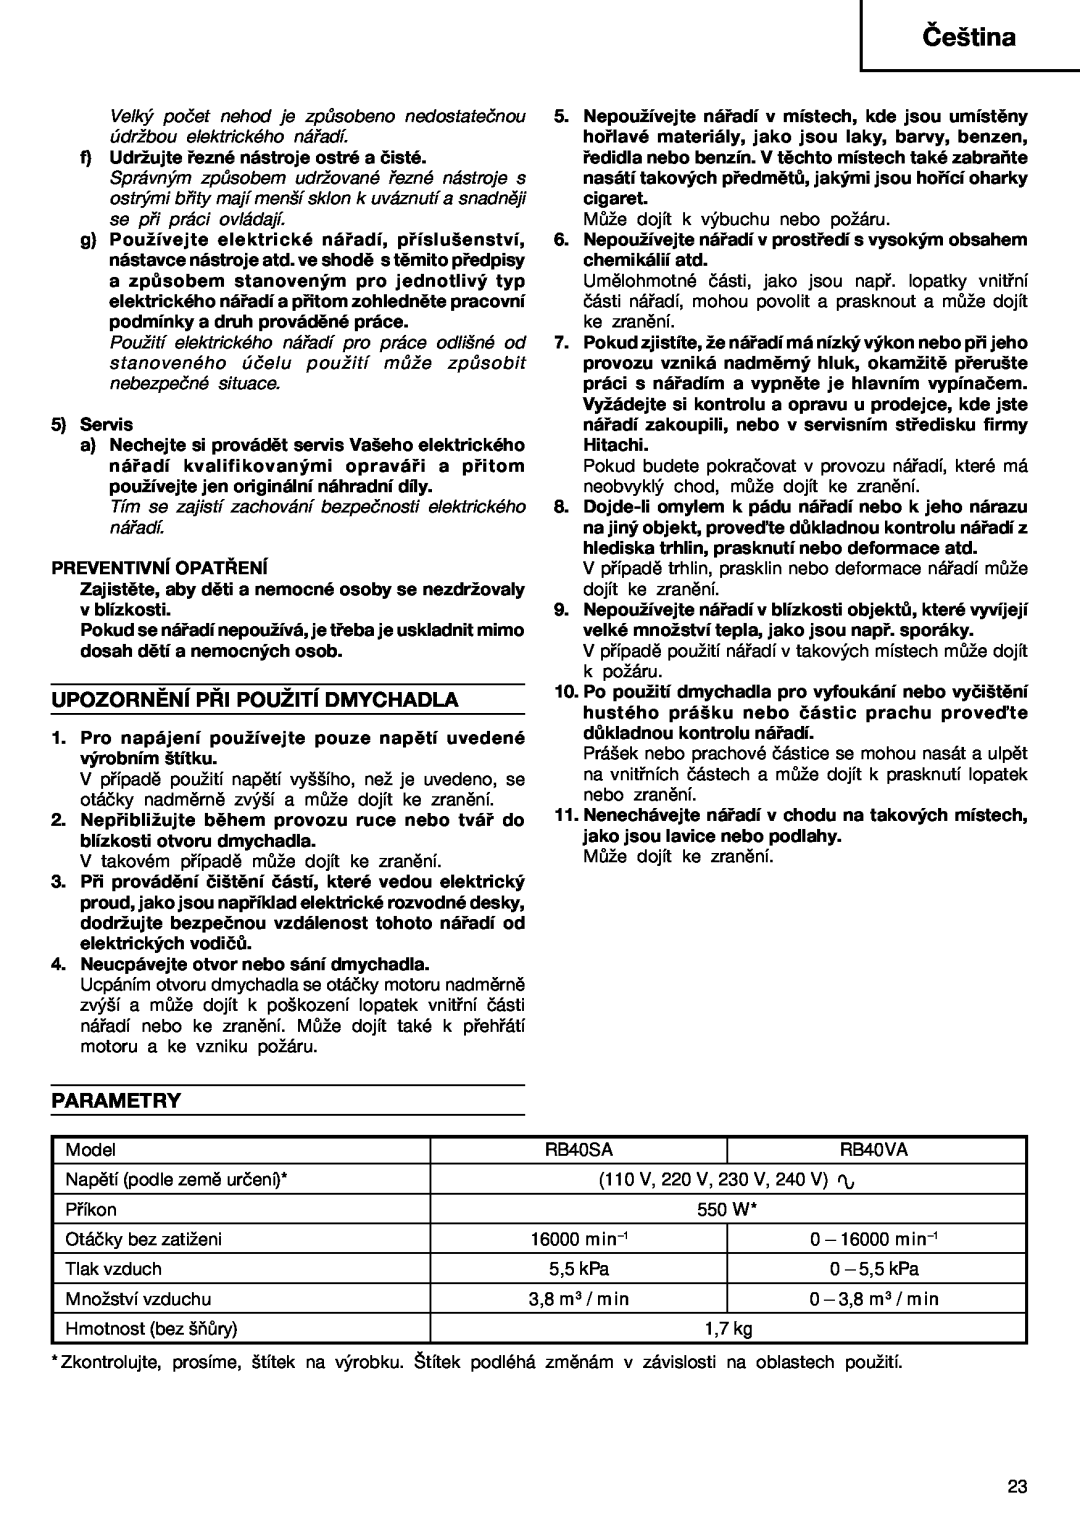 Humminbird RB 40VA manual Upozornění Při Použití Dmychadla, Parametry, Čeština 